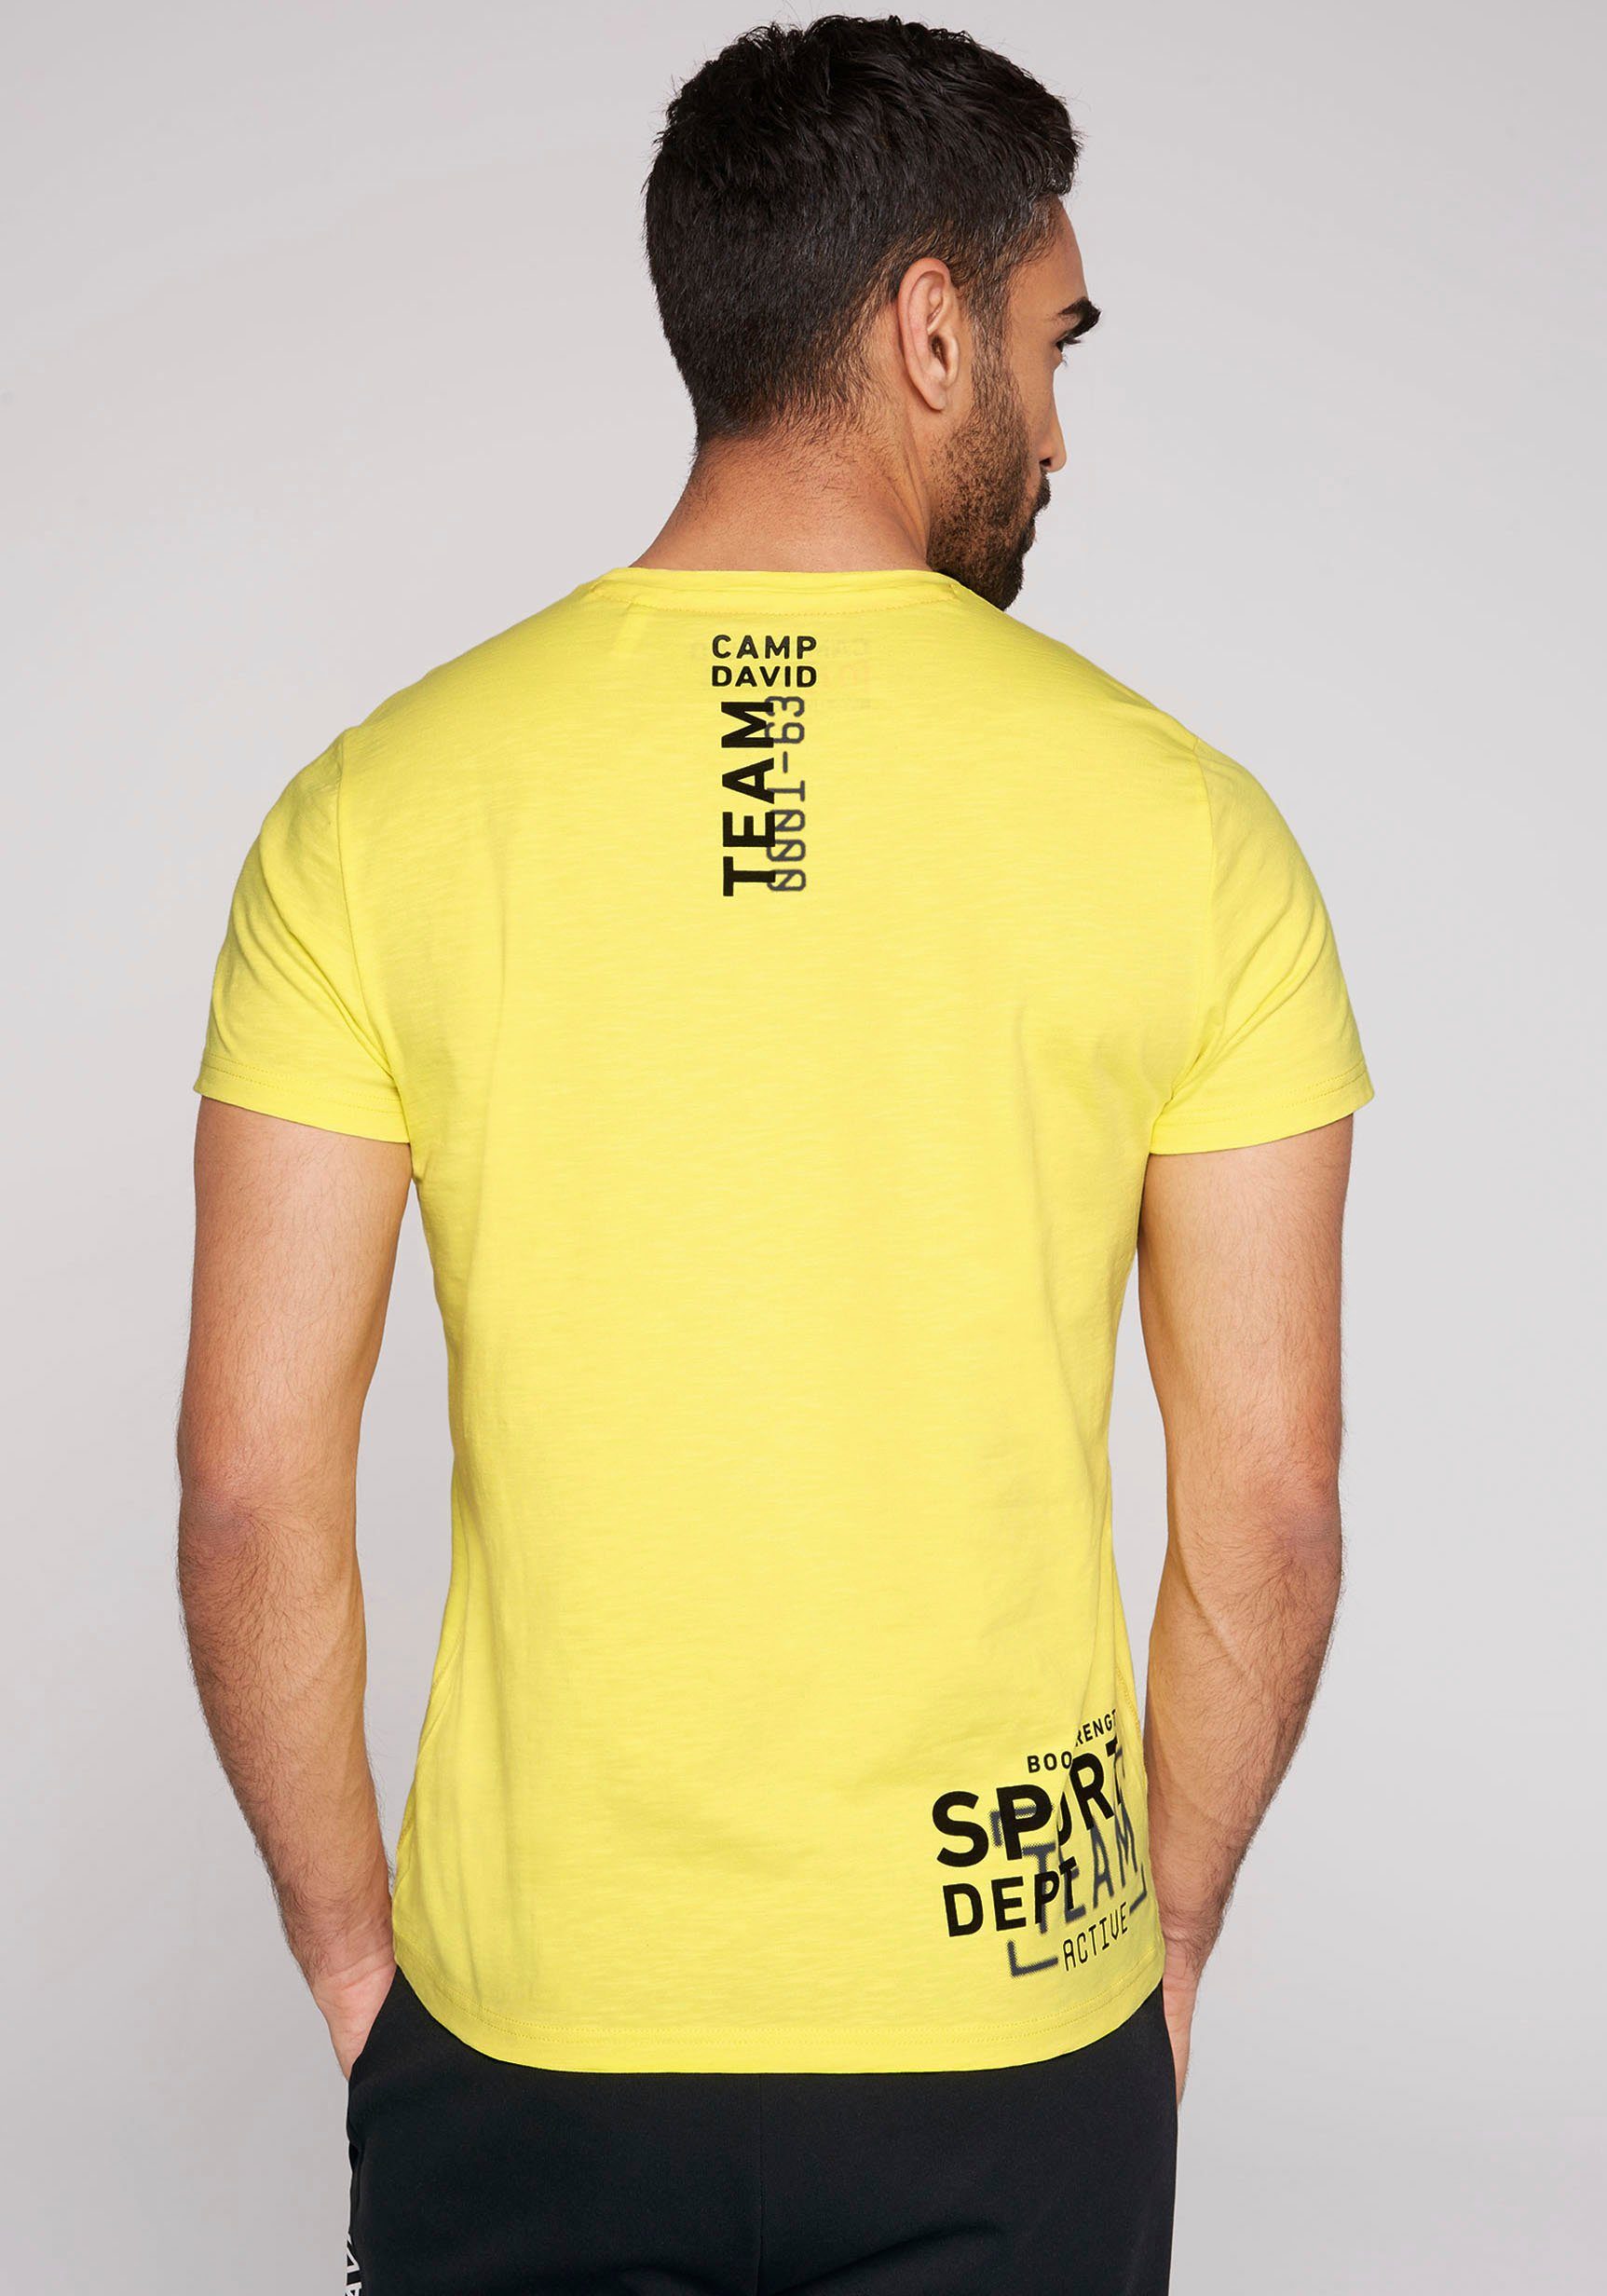 CAMP DAVID T-Shirt active yellow